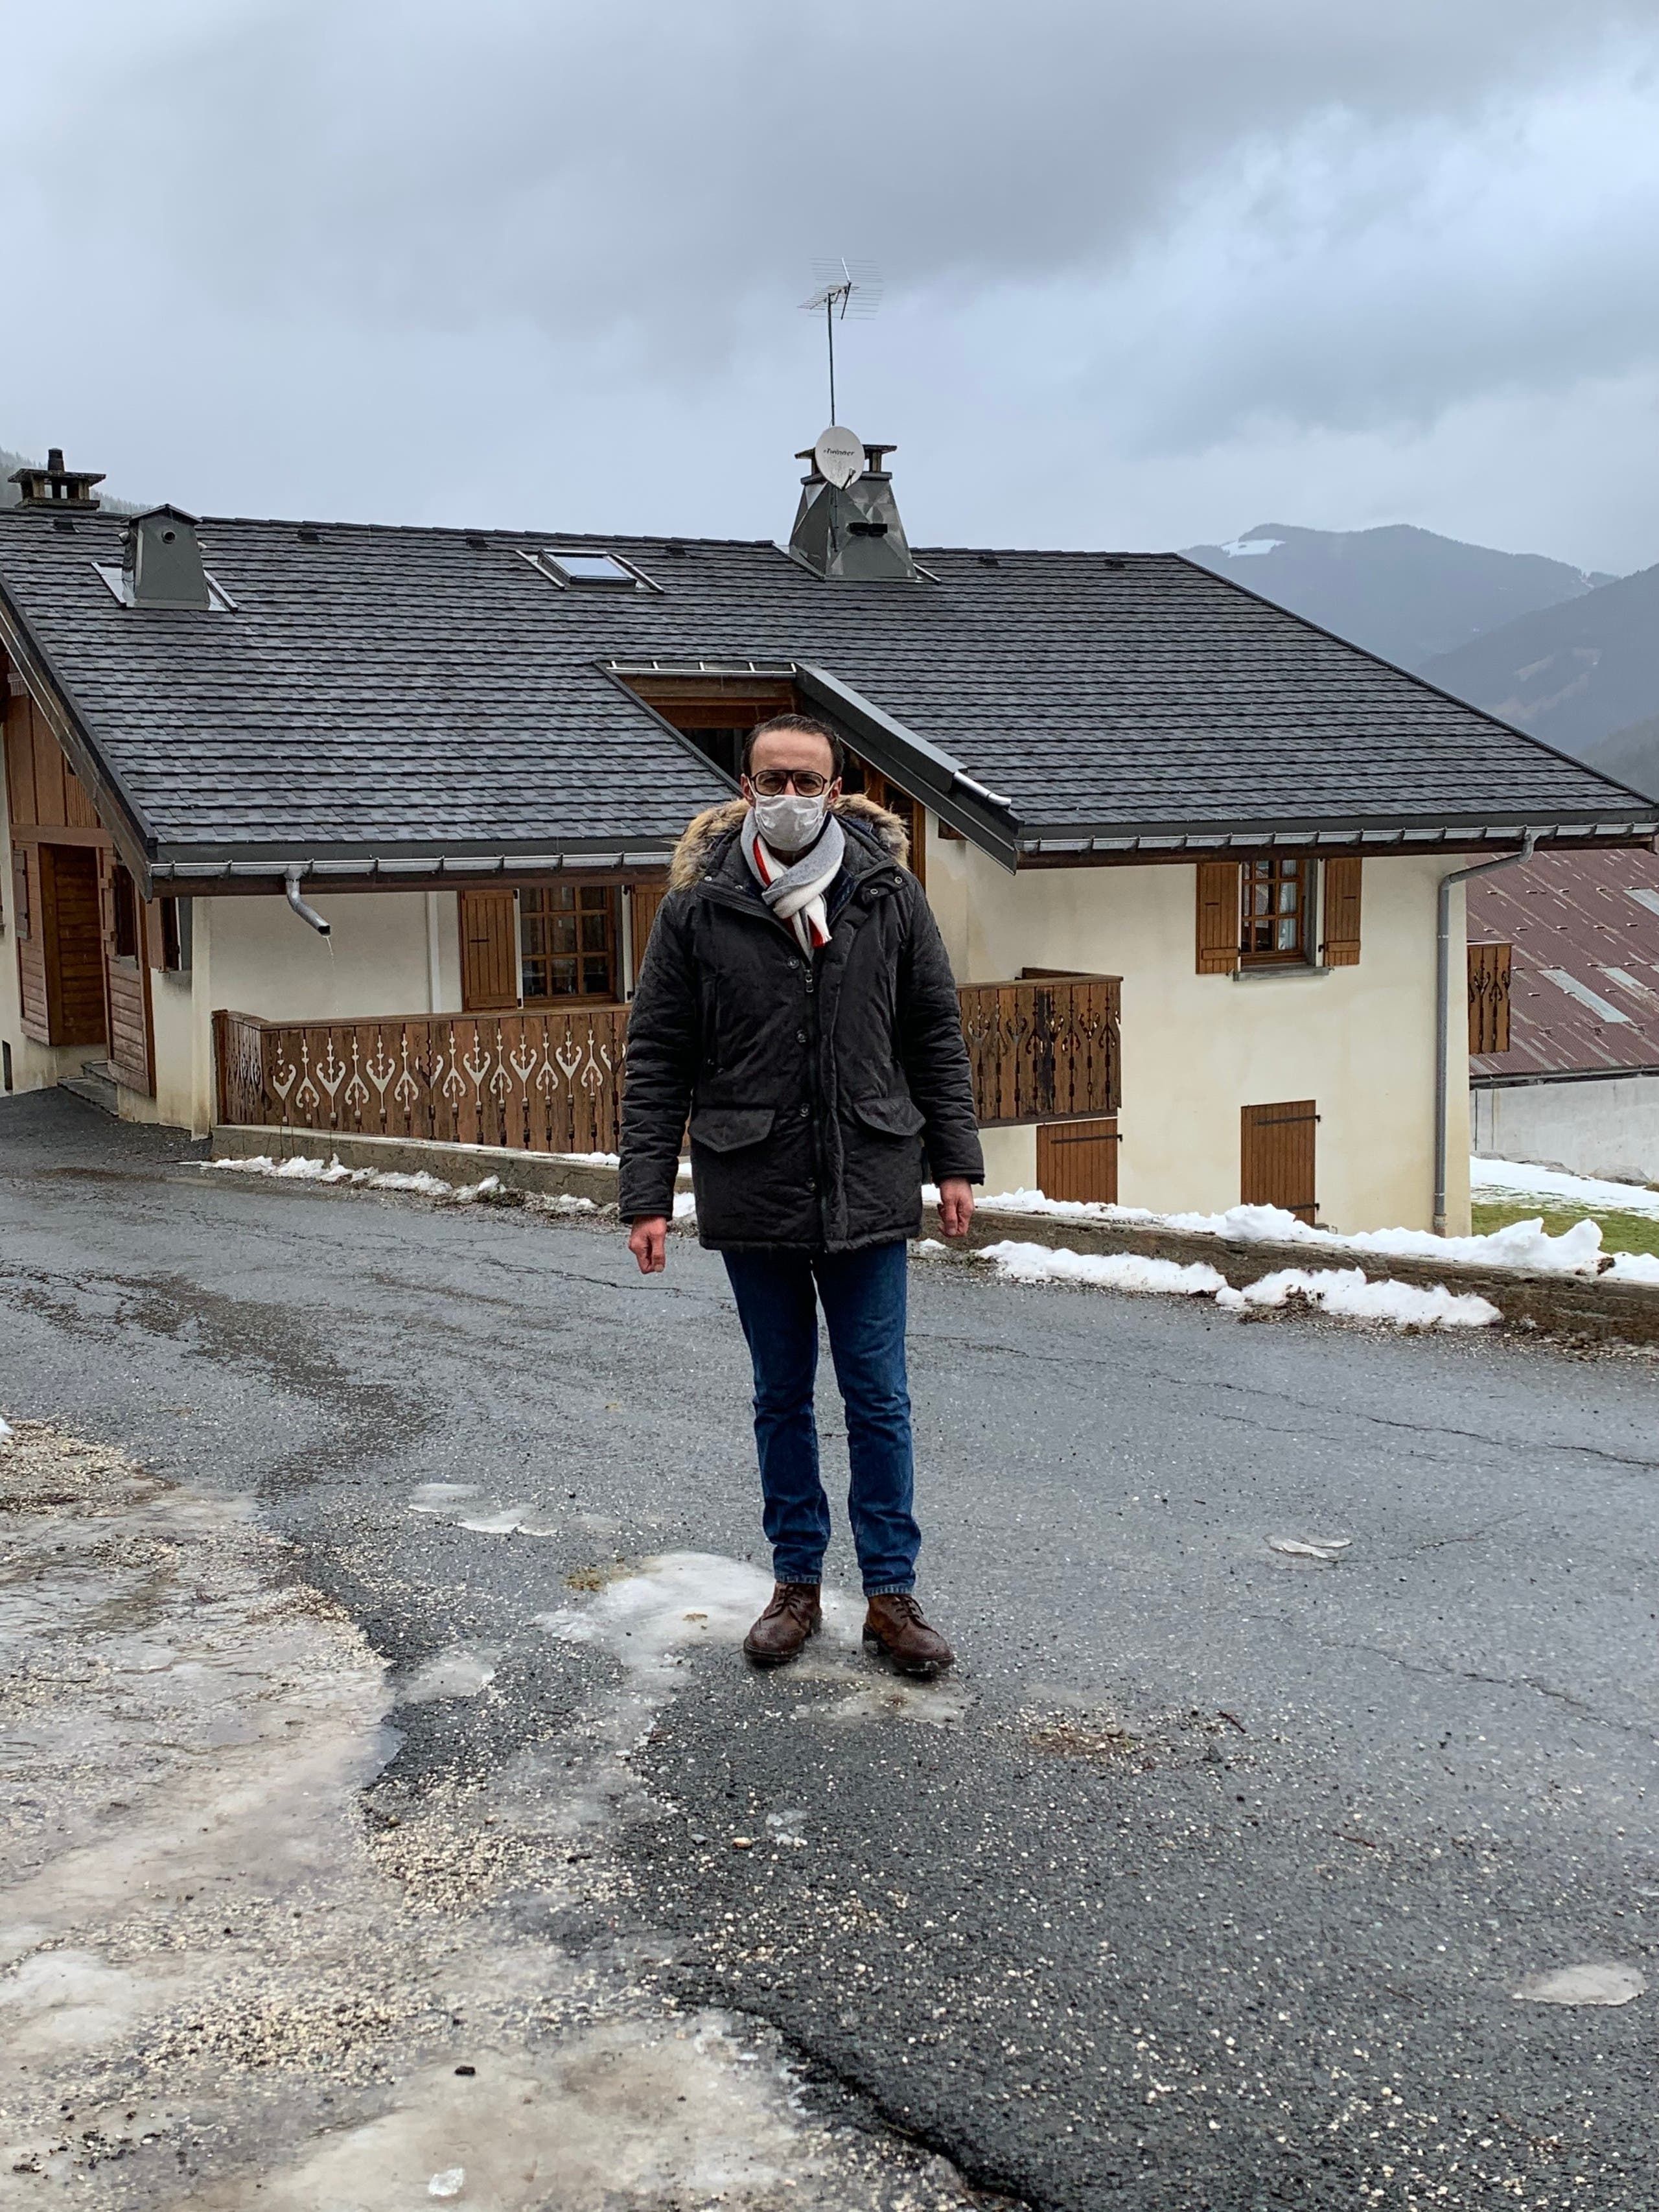 موفد العربية ليث بزاري يرتدي كمامة أمام الكوخ الذي انتشر فيروس كورونا من خلاله في جبال الألب الفرنسية